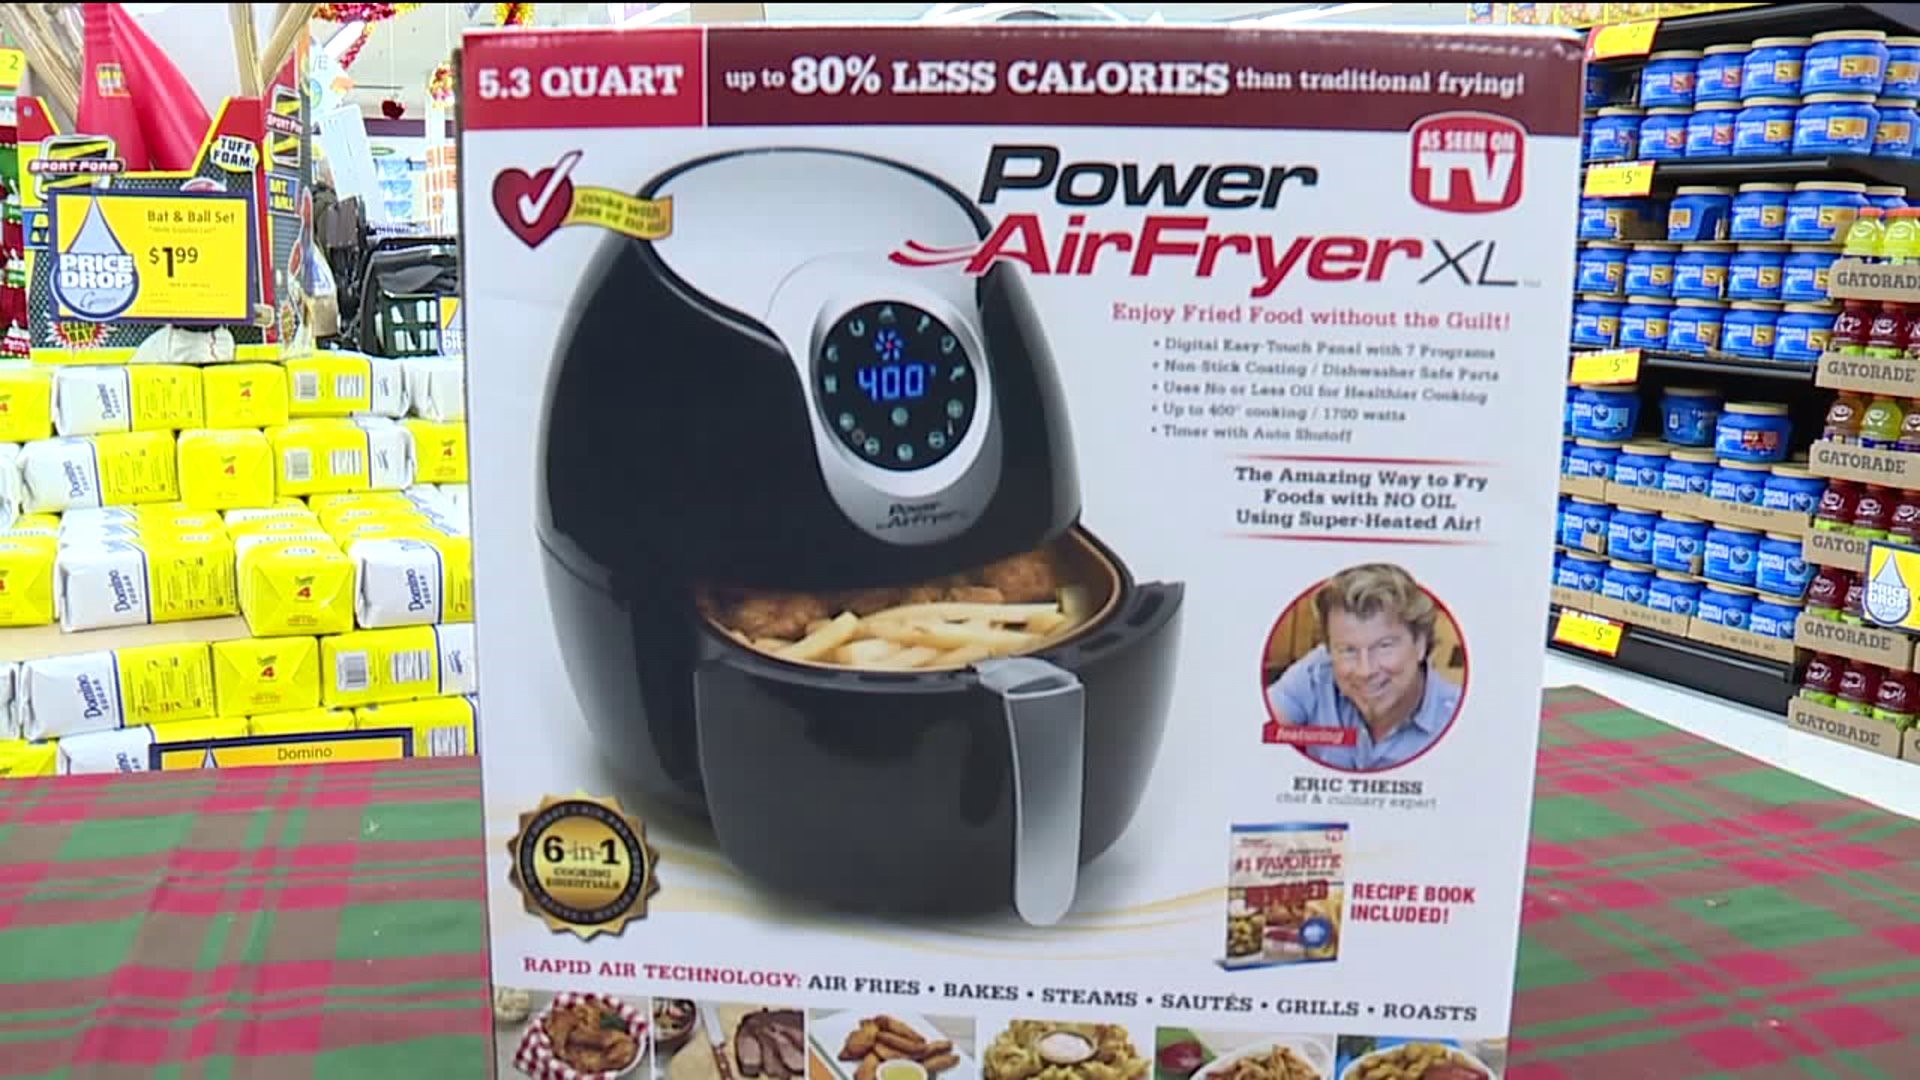 Power Air Fryer XL As Seen on TV